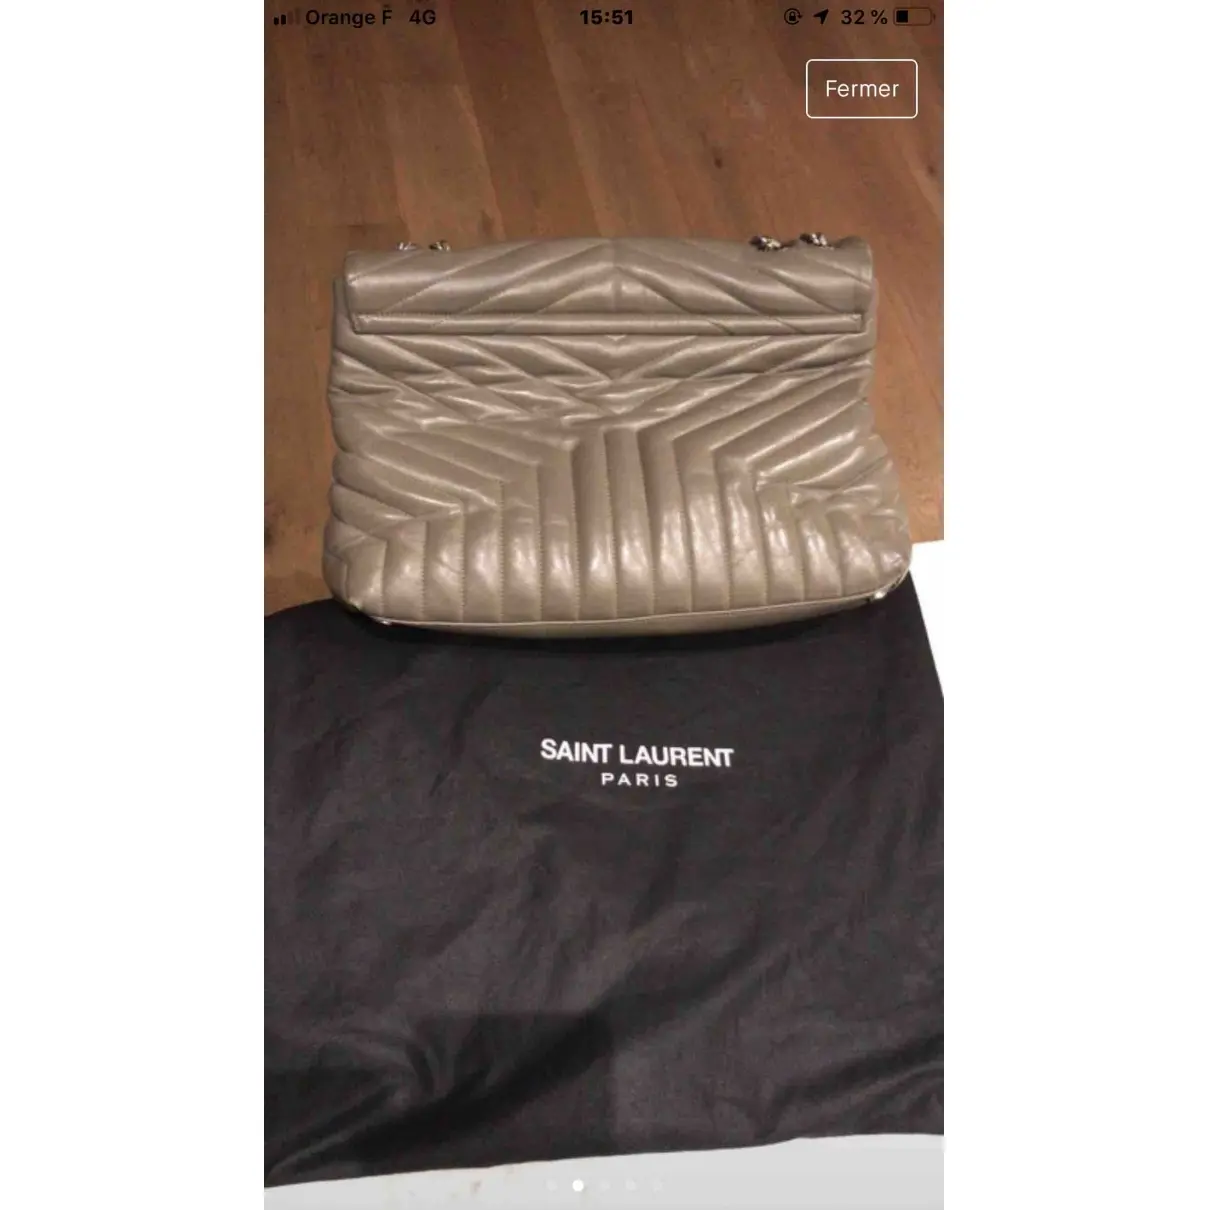 Saint Laurent Loulou leather handbag for sale